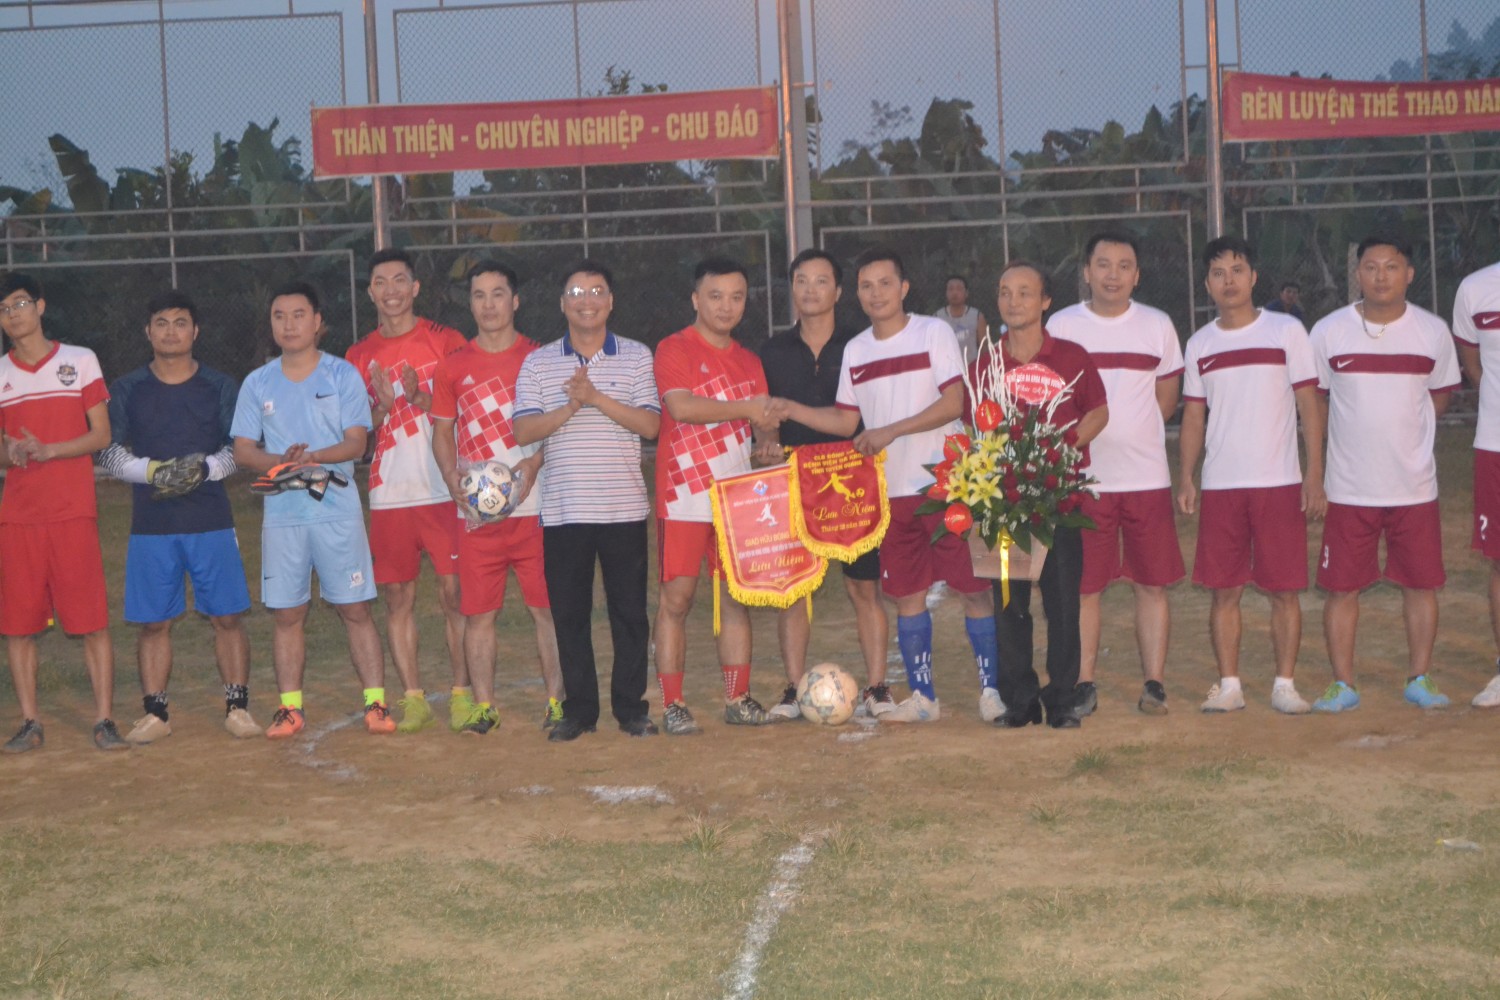 Giao hữu bóng đá: bệnh viện đa khoa Hùng Vương - Bệnh viện đa khoa tỉnh Tuyên Quang.